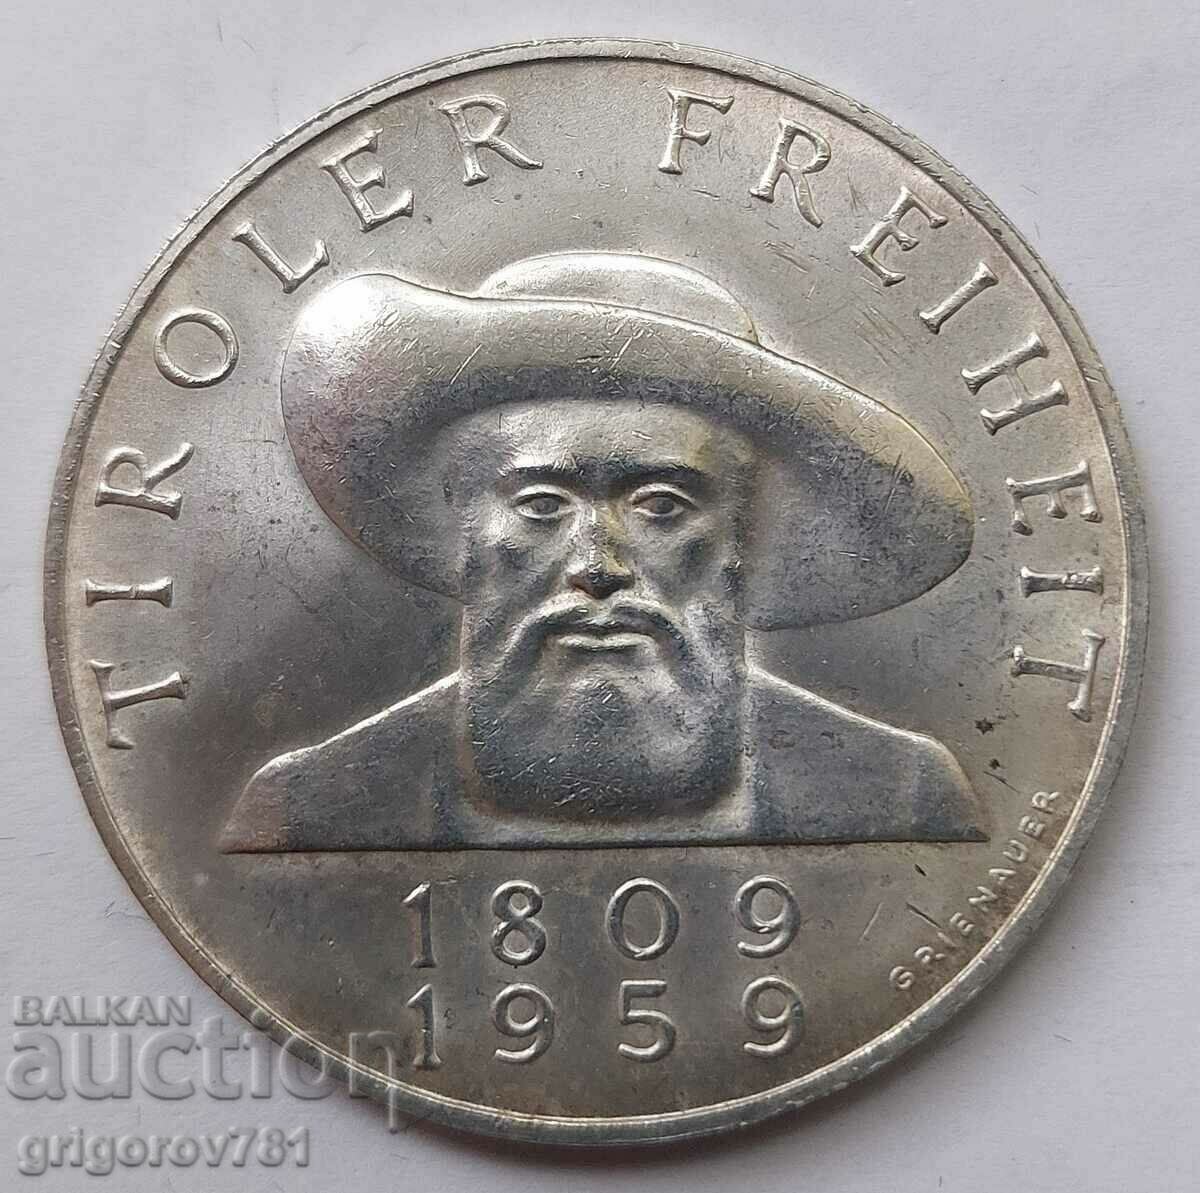 Ασημένιο 50 σελίνια Αυστρία 1959 - Ασημένιο νόμισμα #15